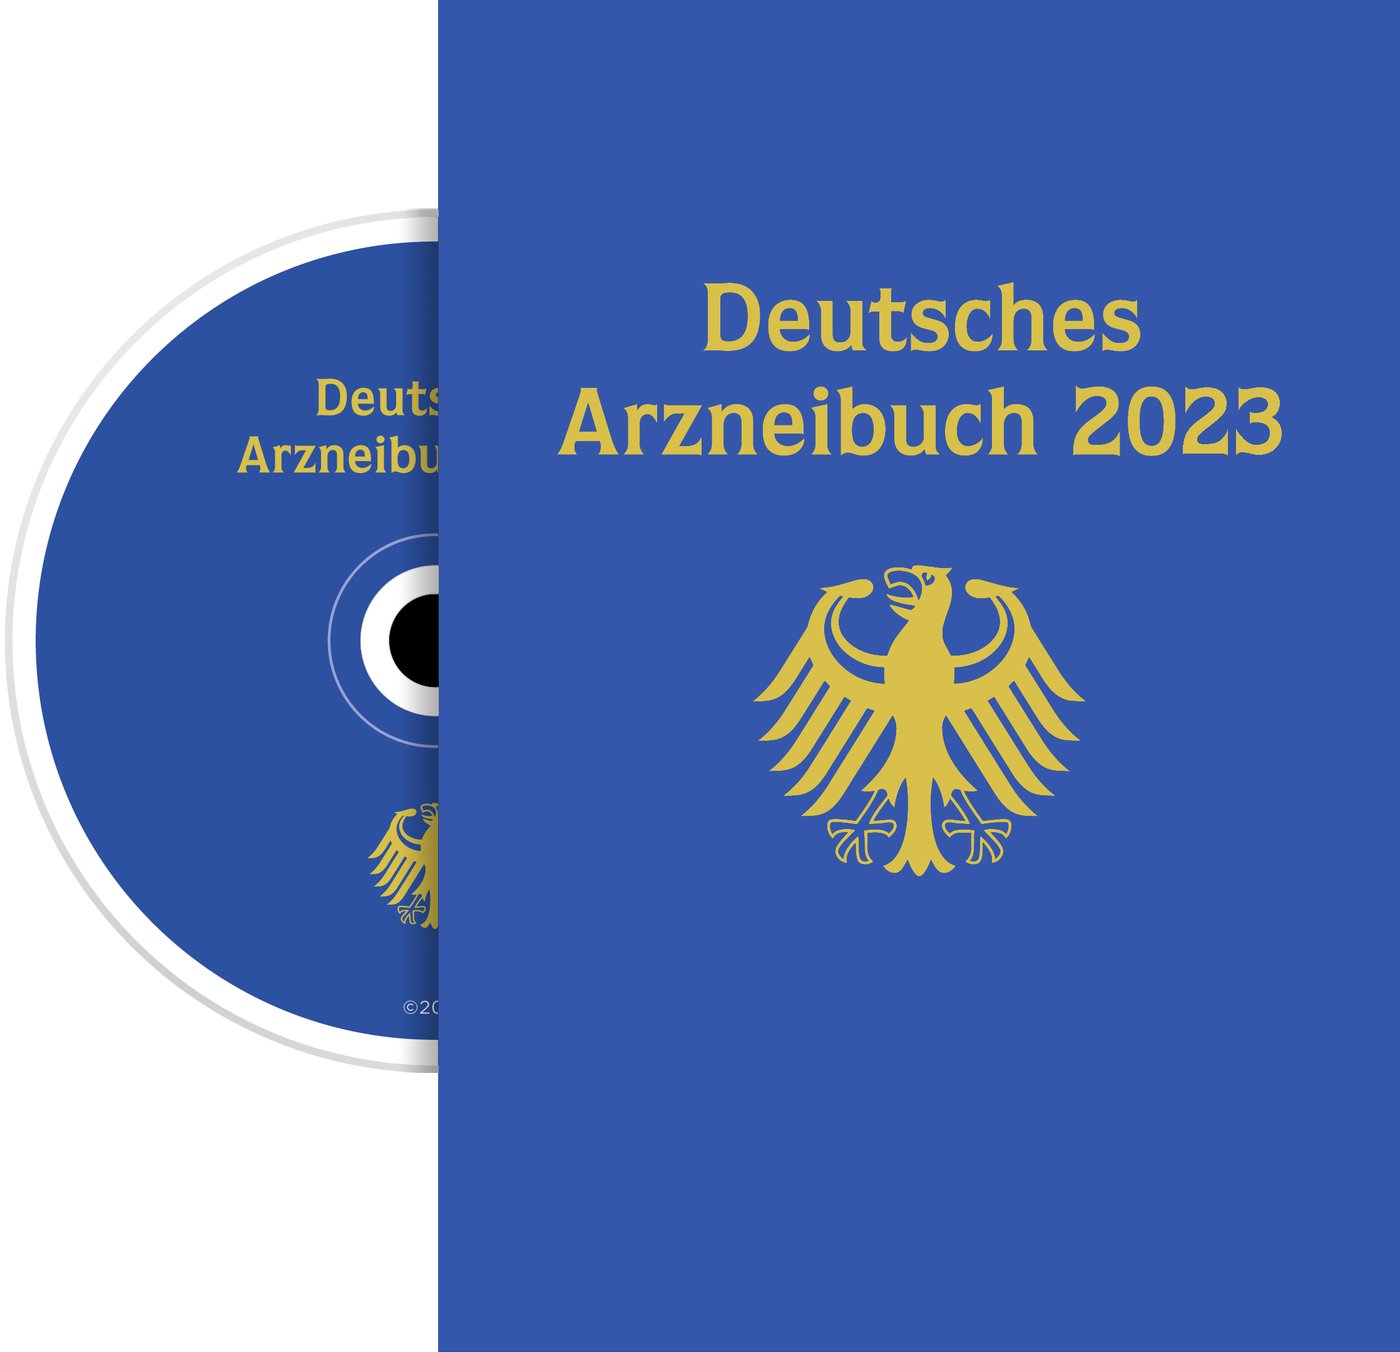 Deutsches Arzneibuch 2023 Digital